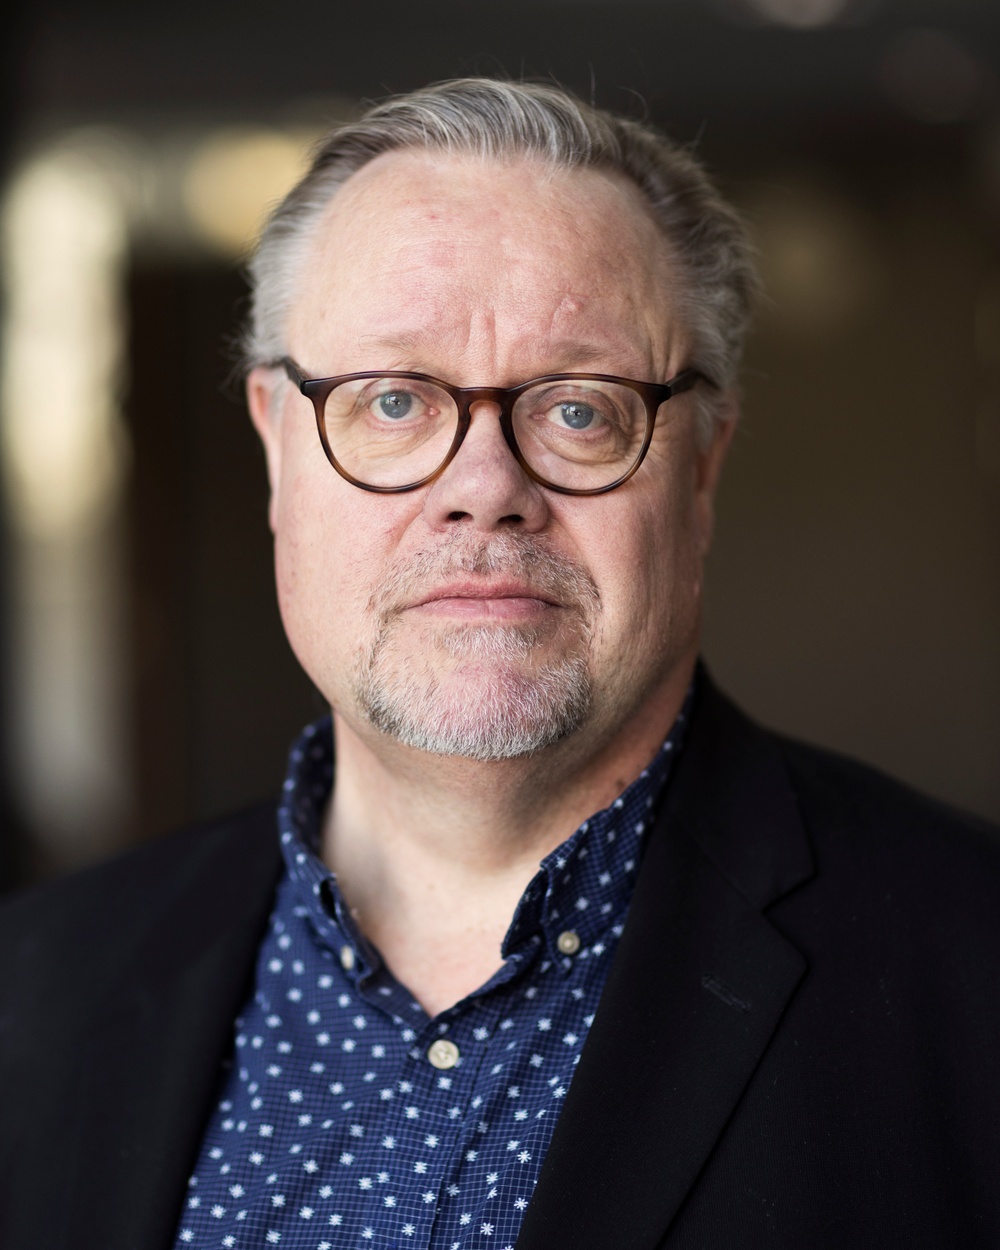 Kormästare Anders Lundström.
Foto: Elin Berge